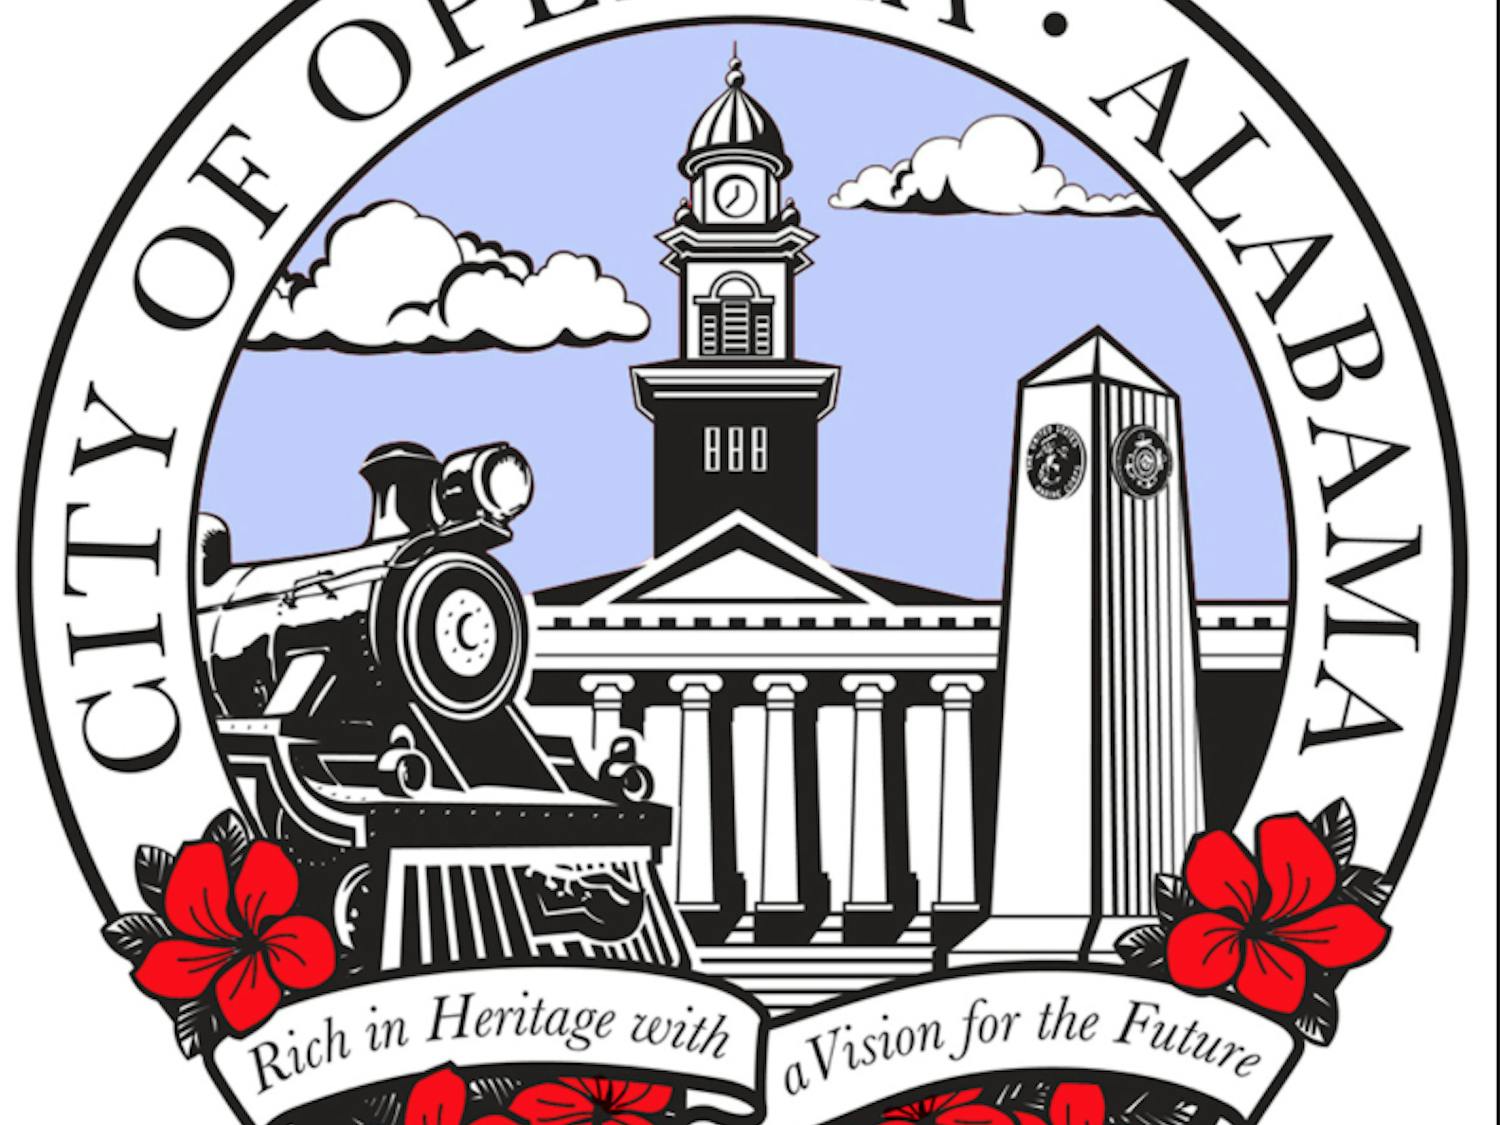 City of Opelika logo